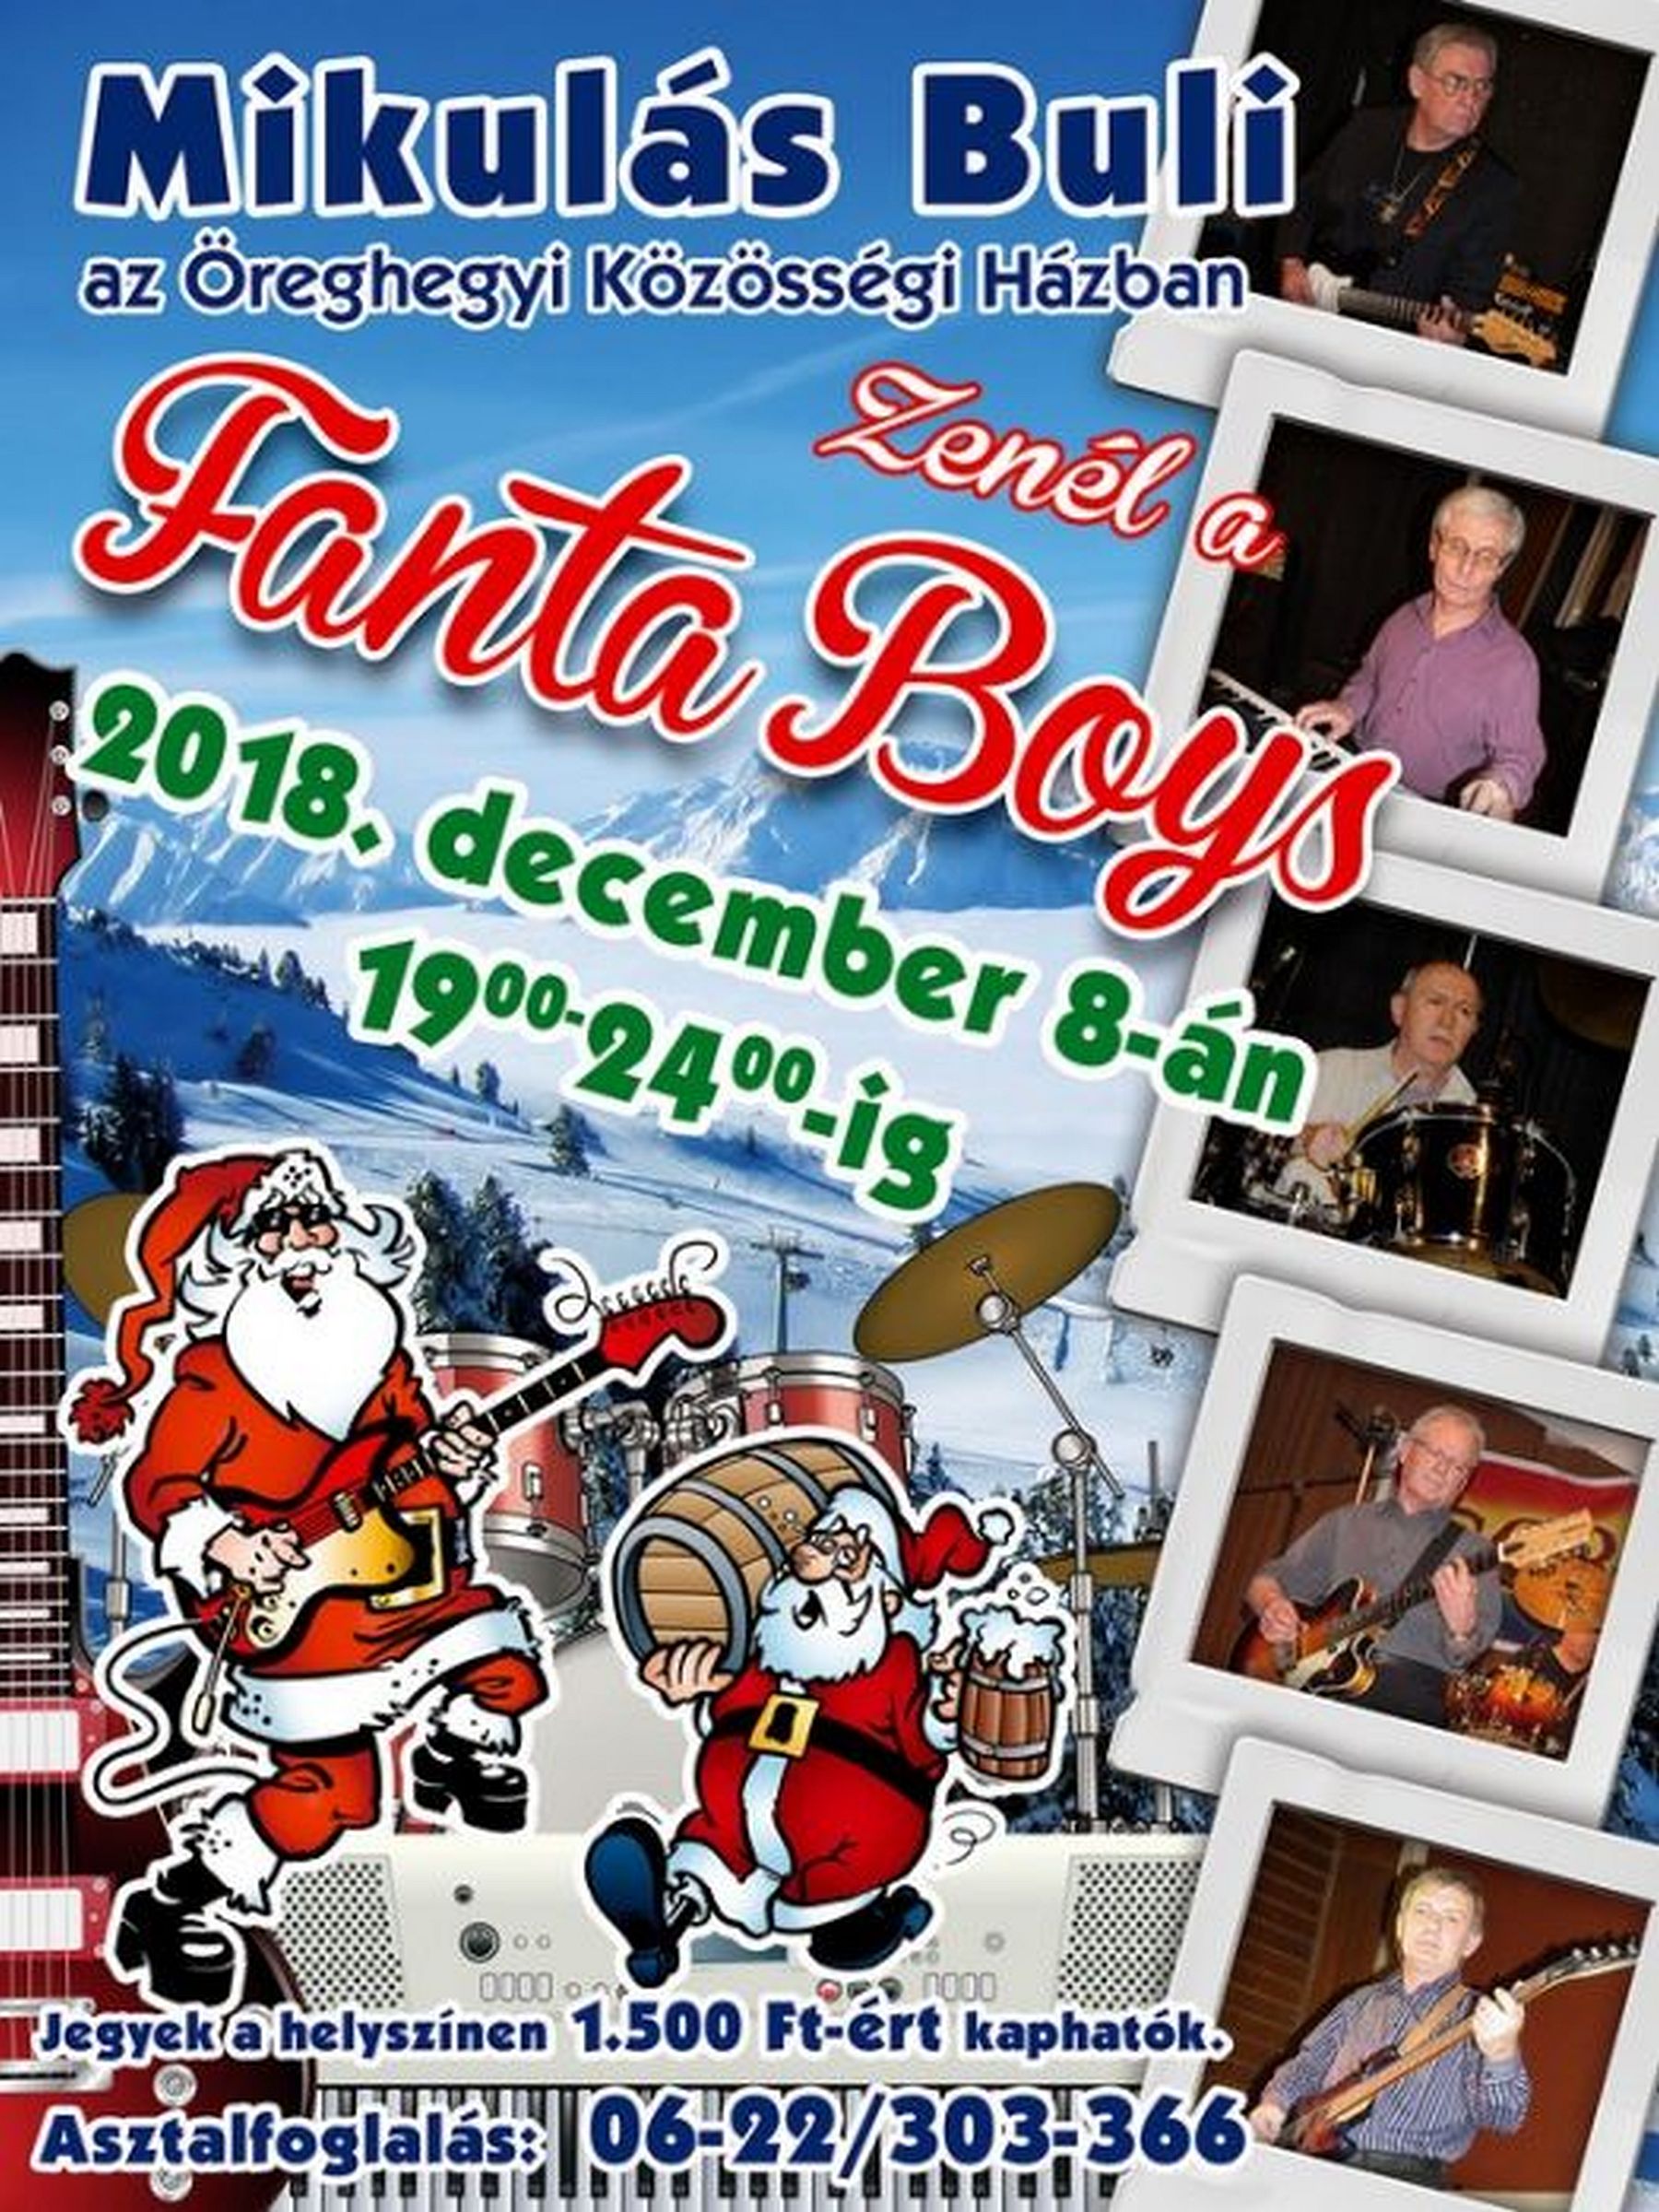 Mikulás buli lesz a Fanta Boys zenekarral az Öreghegyi Közösségi Házban